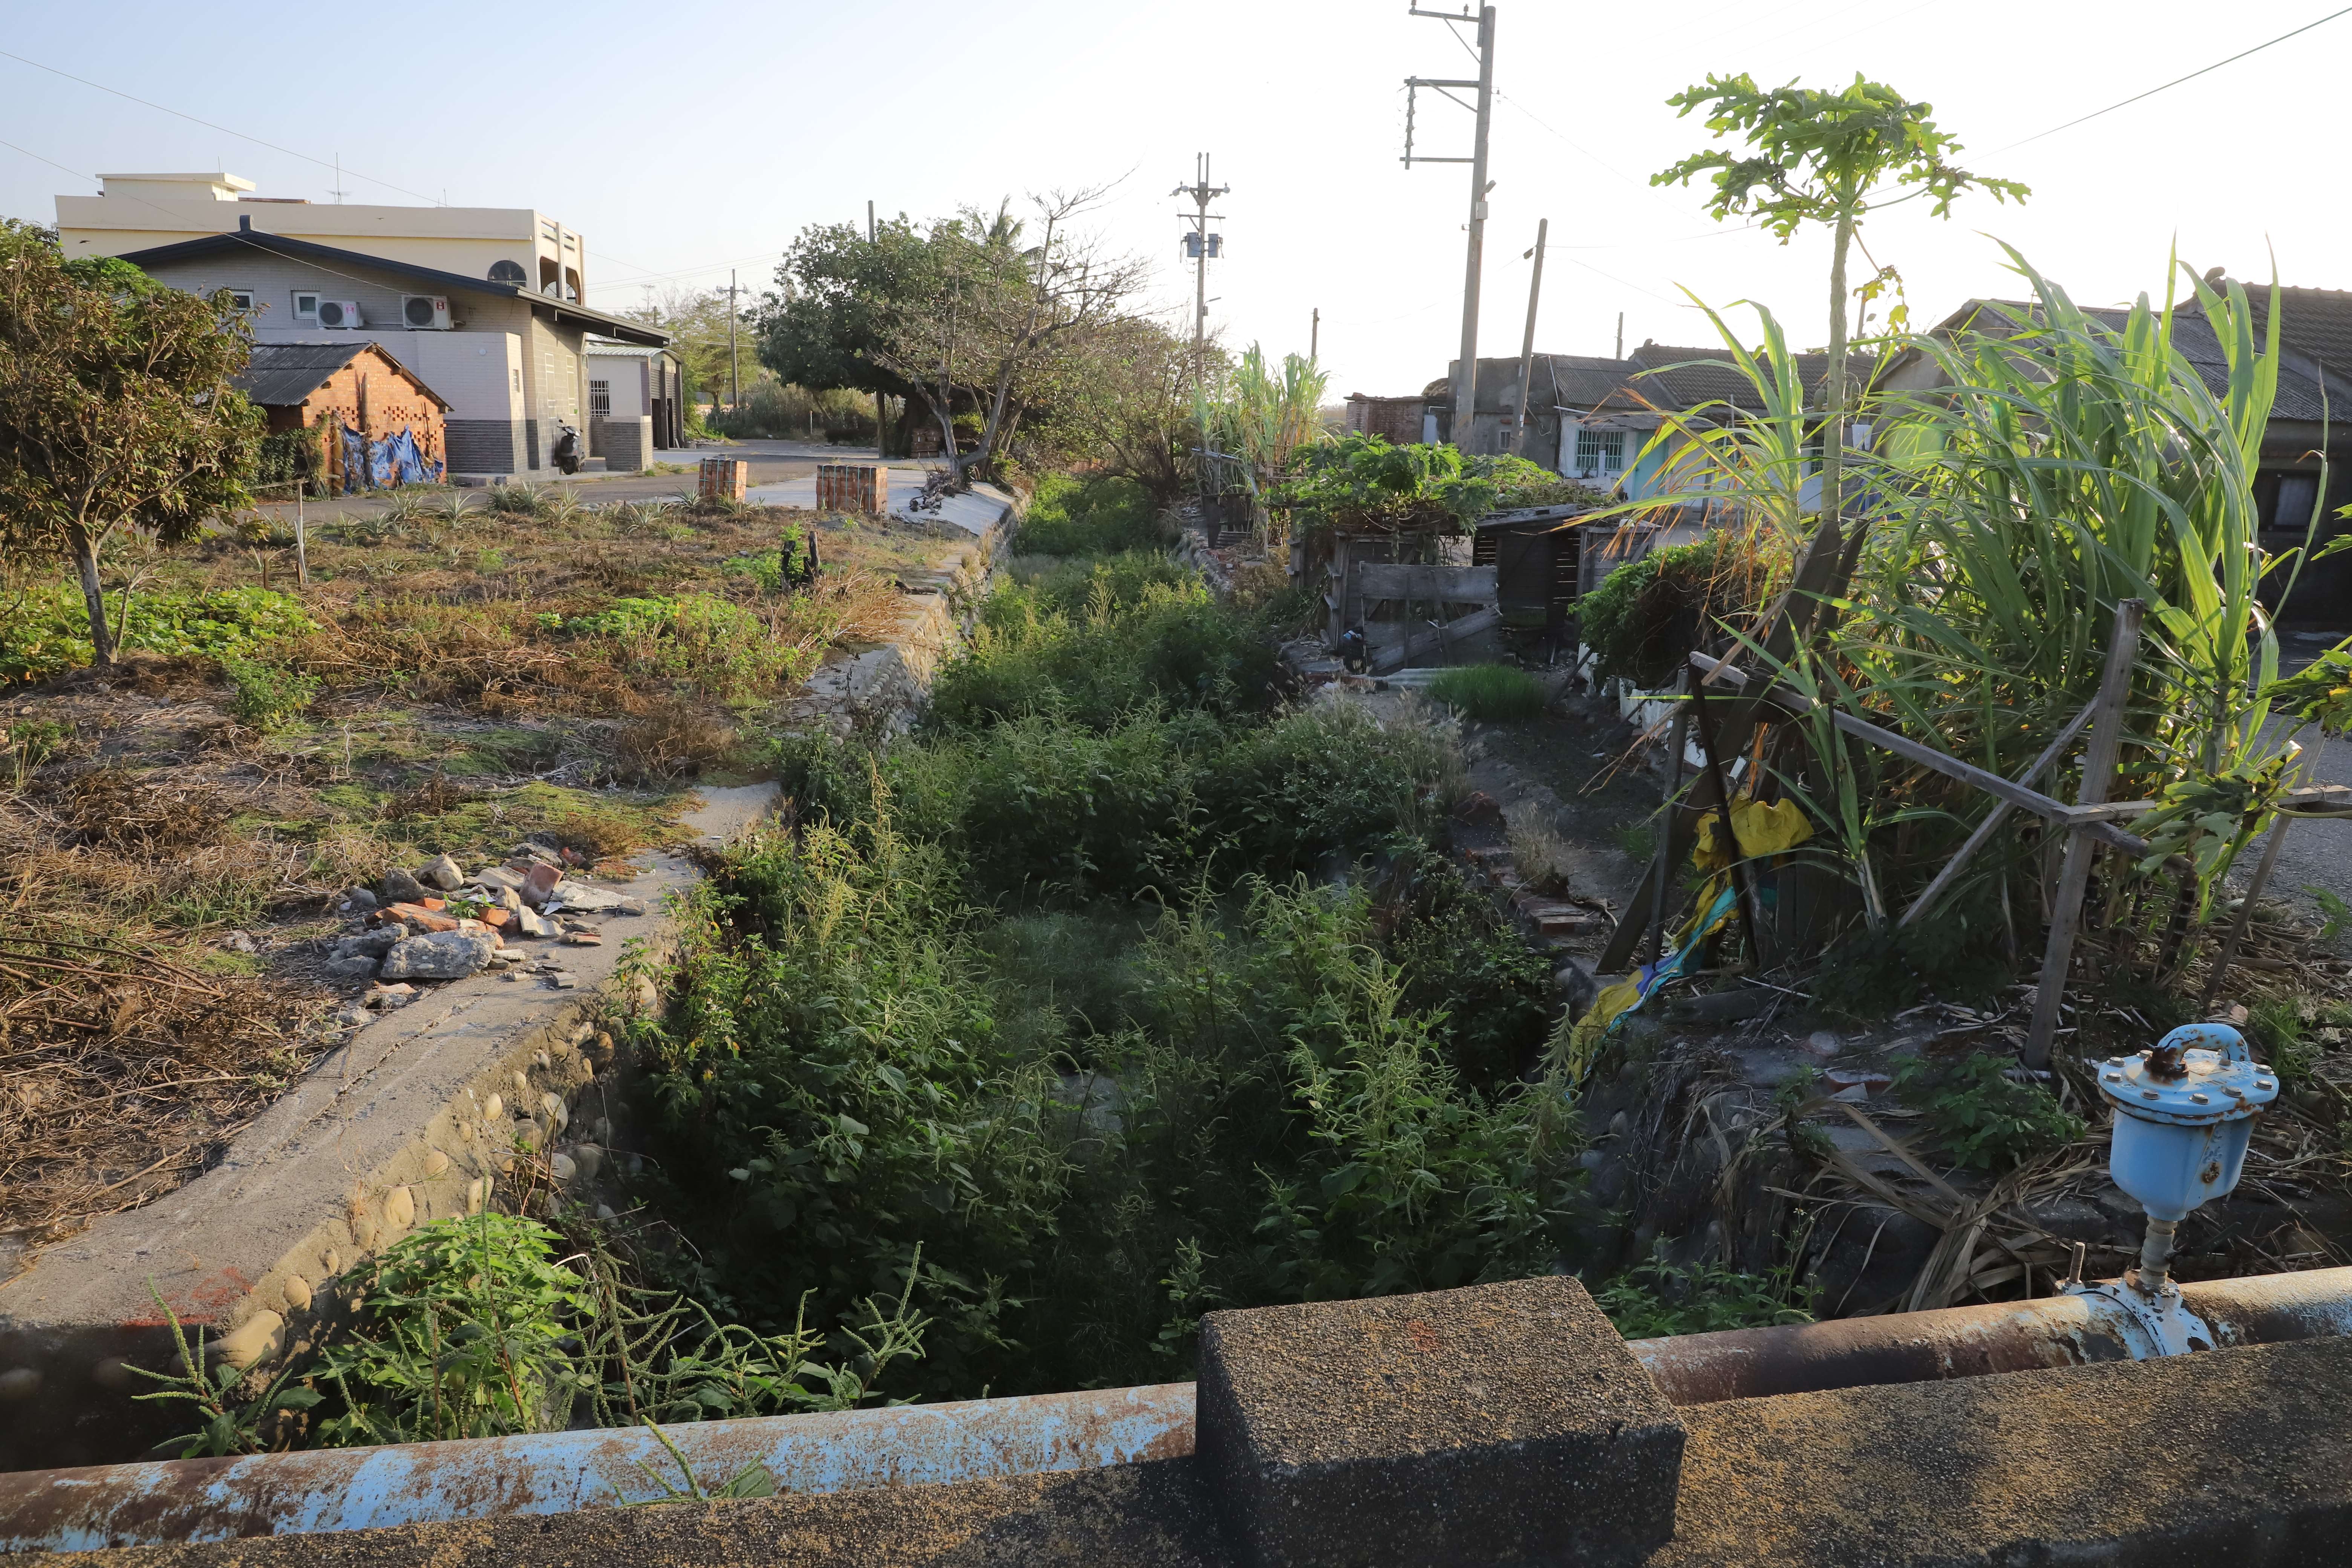 蚵寮社區西側既有排水未改善完竣，在防汛期間容易造成沖刷潰堤，影響住戶安全。